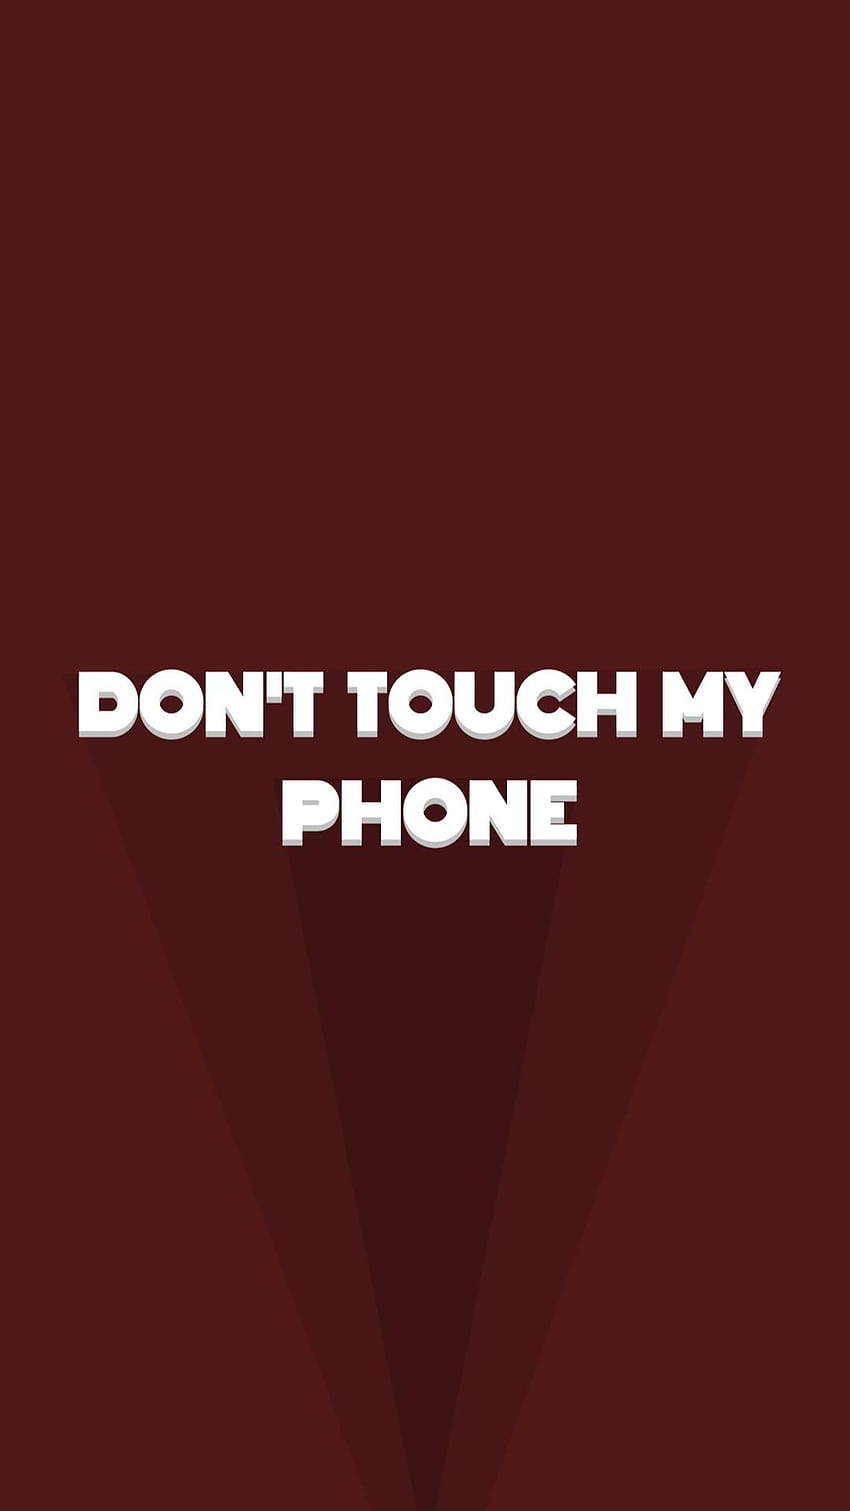 Jangan Sentuh Ponsel Saya wallpaper ponsel HD